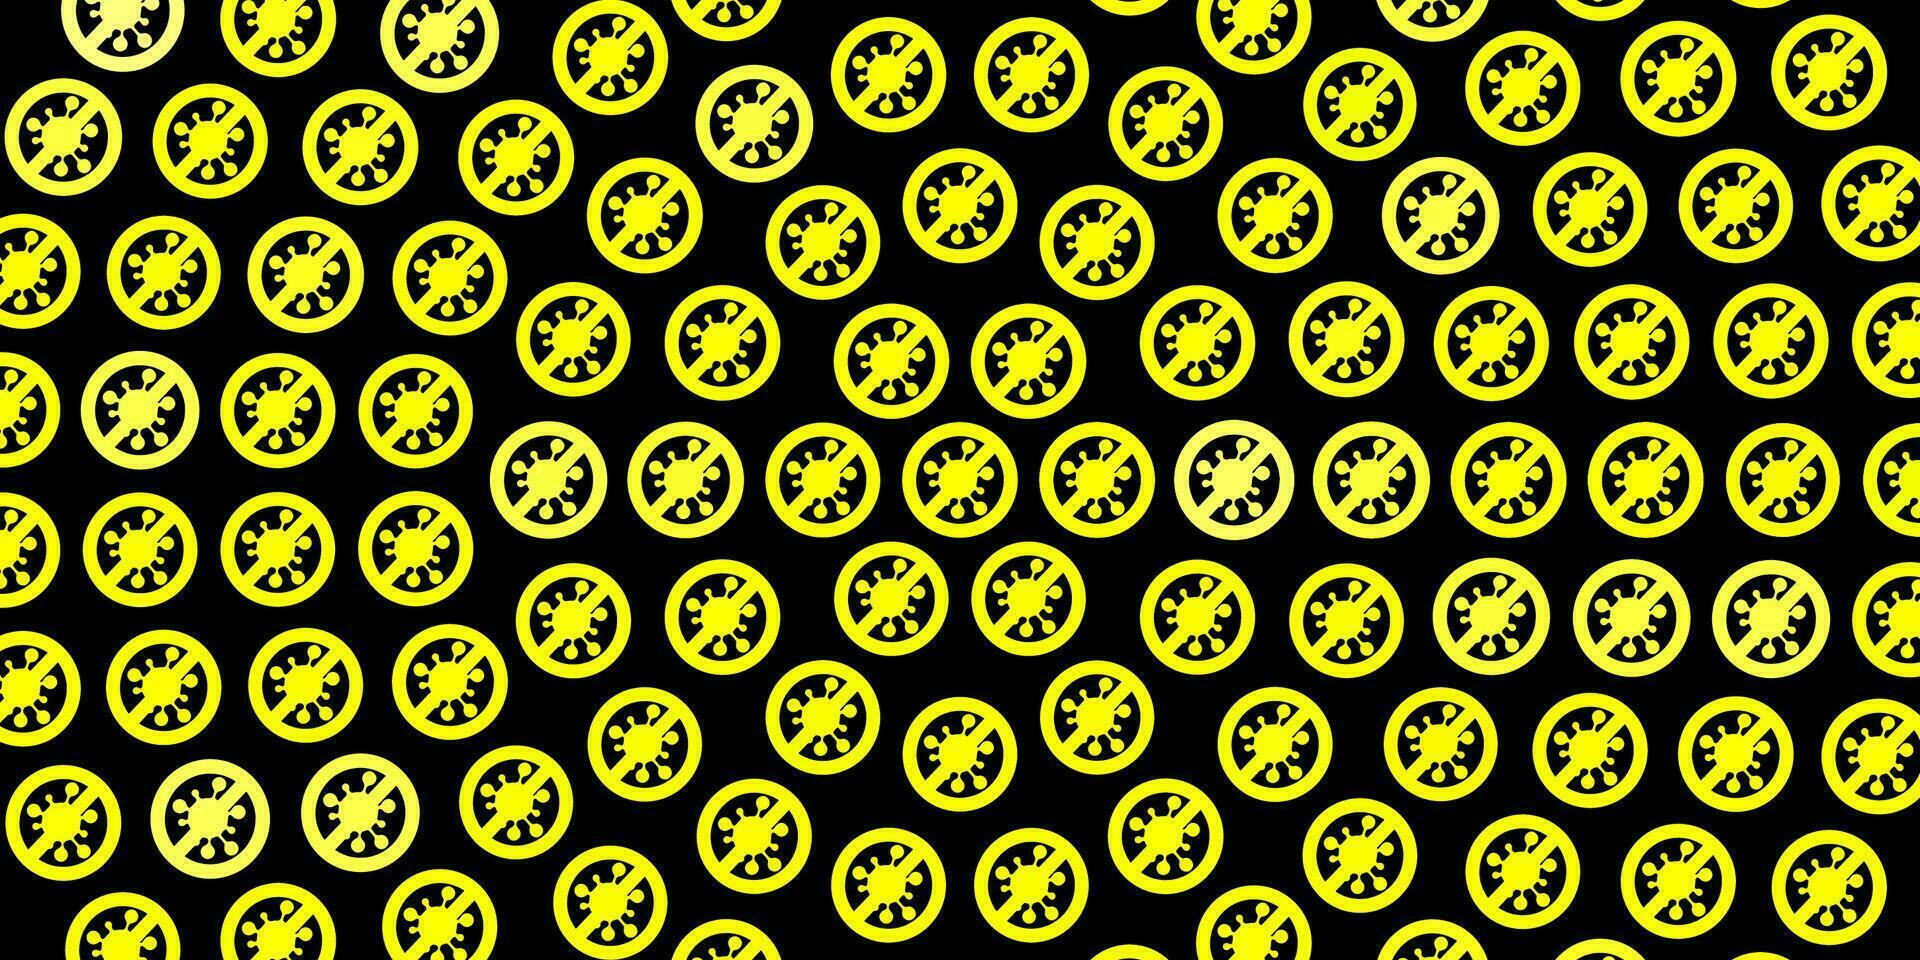 fond de vecteur jaune foncé avec des symboles covid-19.